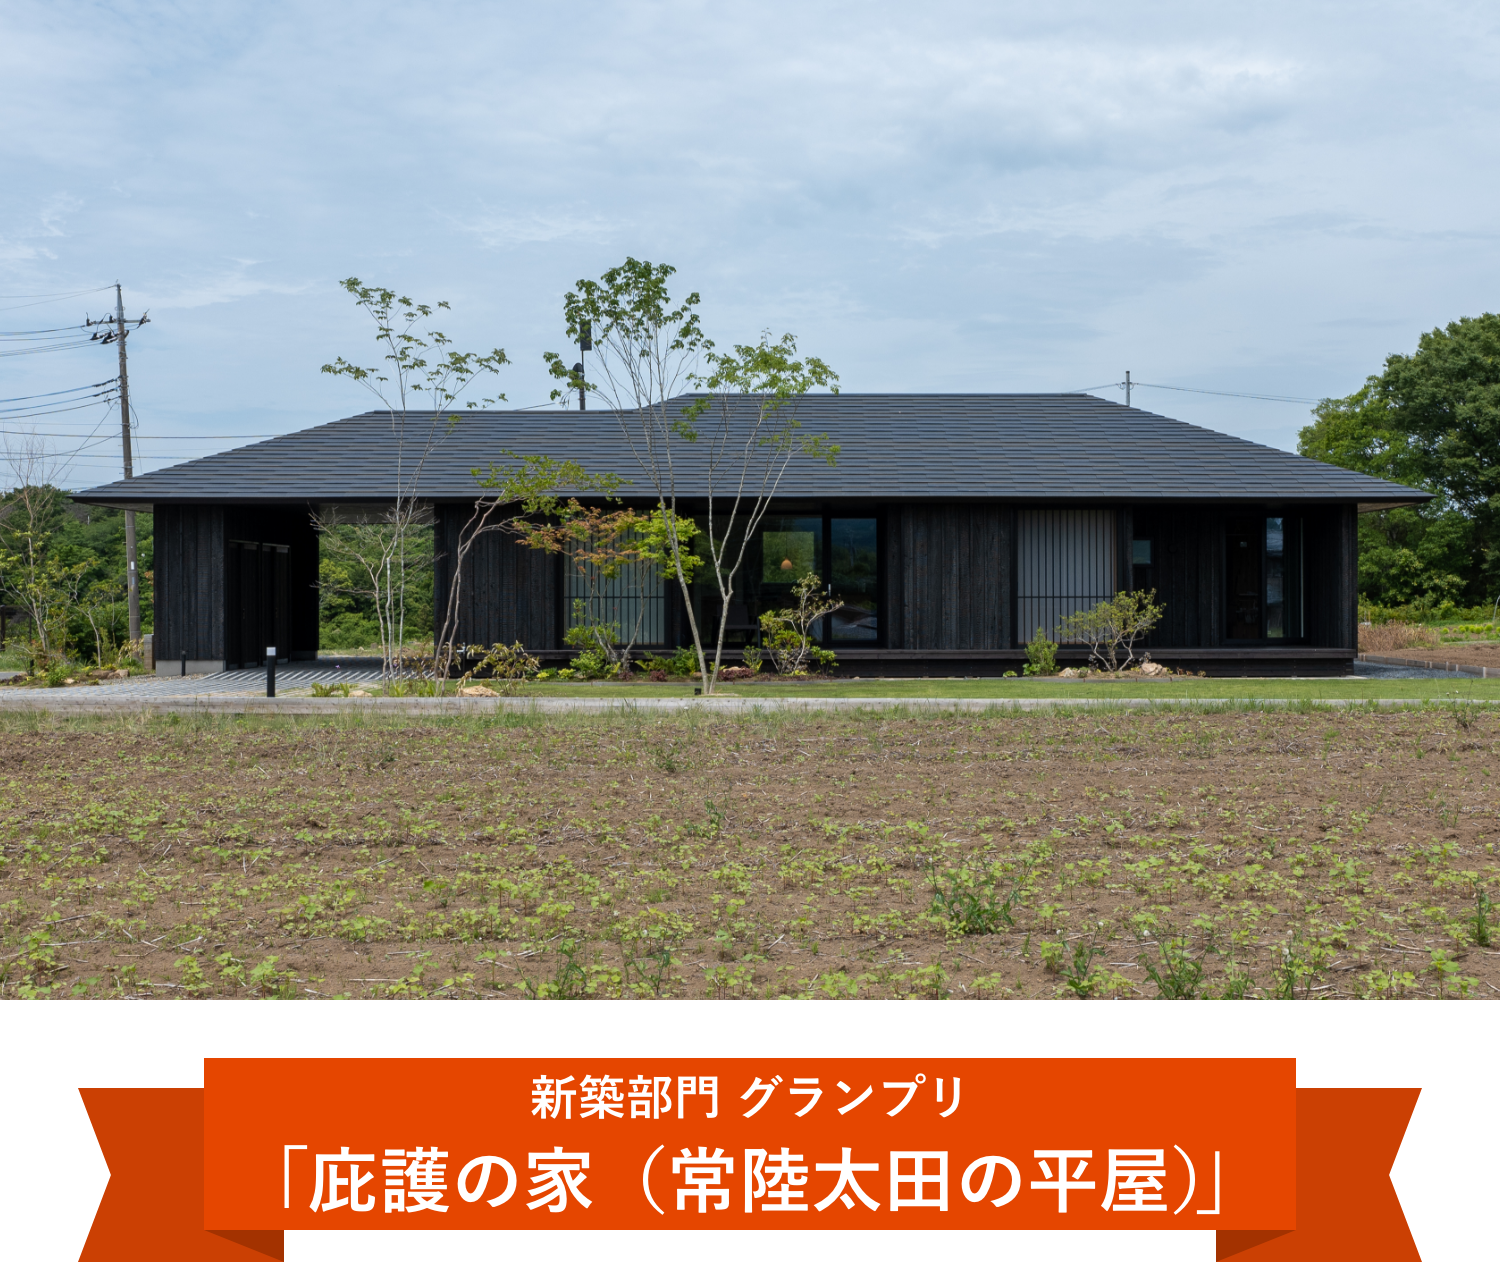 新築部門グランプリ「庇護の家（常陸太田の平屋）」